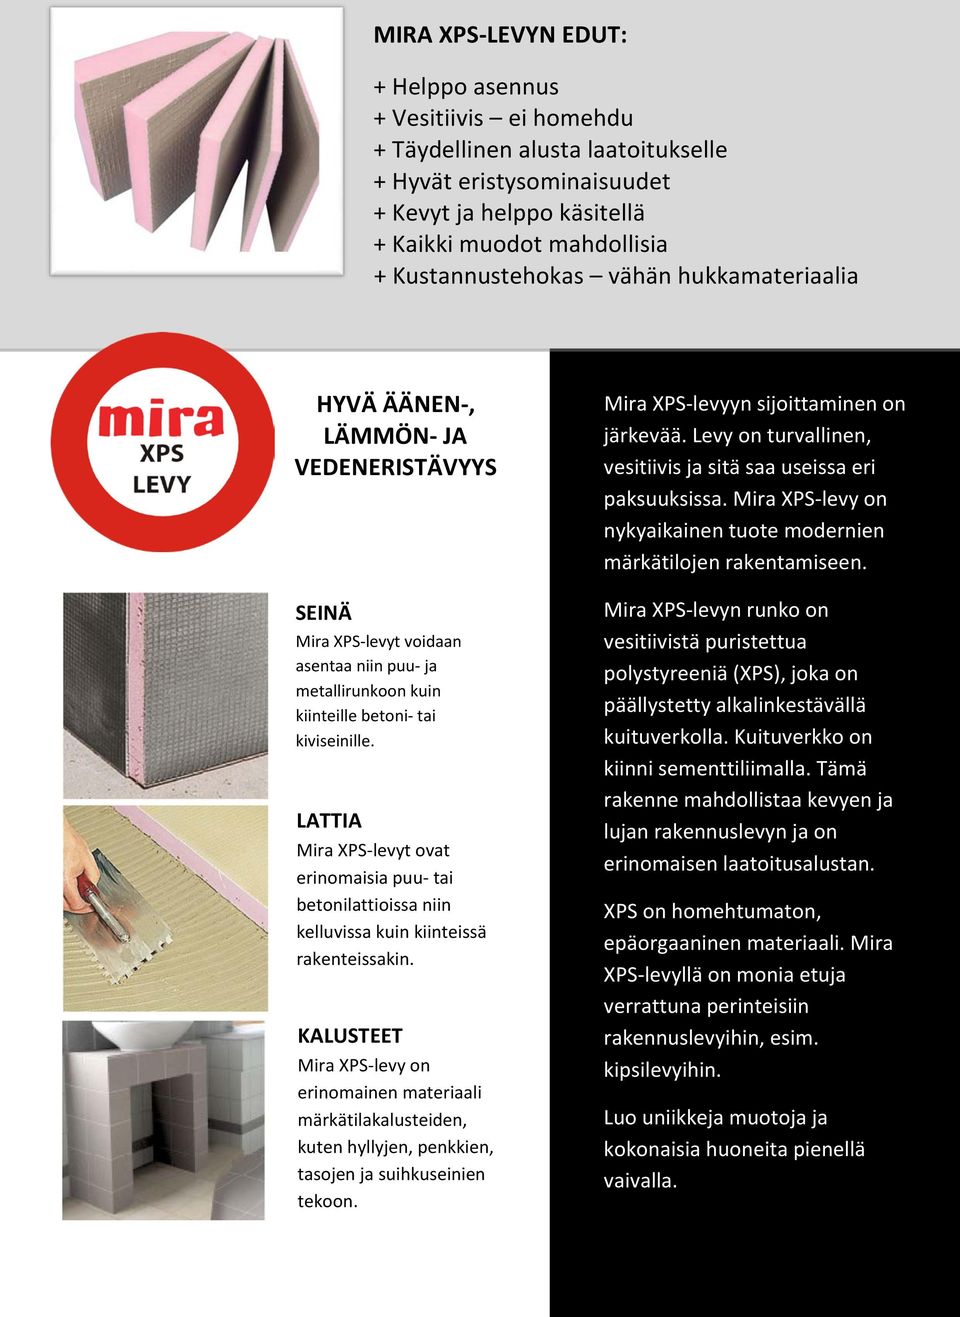 LATTIA Mira XPS-levyt ovat erinomaisia puu- tai betonilattioissa niin kelluvissa kuin kiinteissä rakenteissakin.